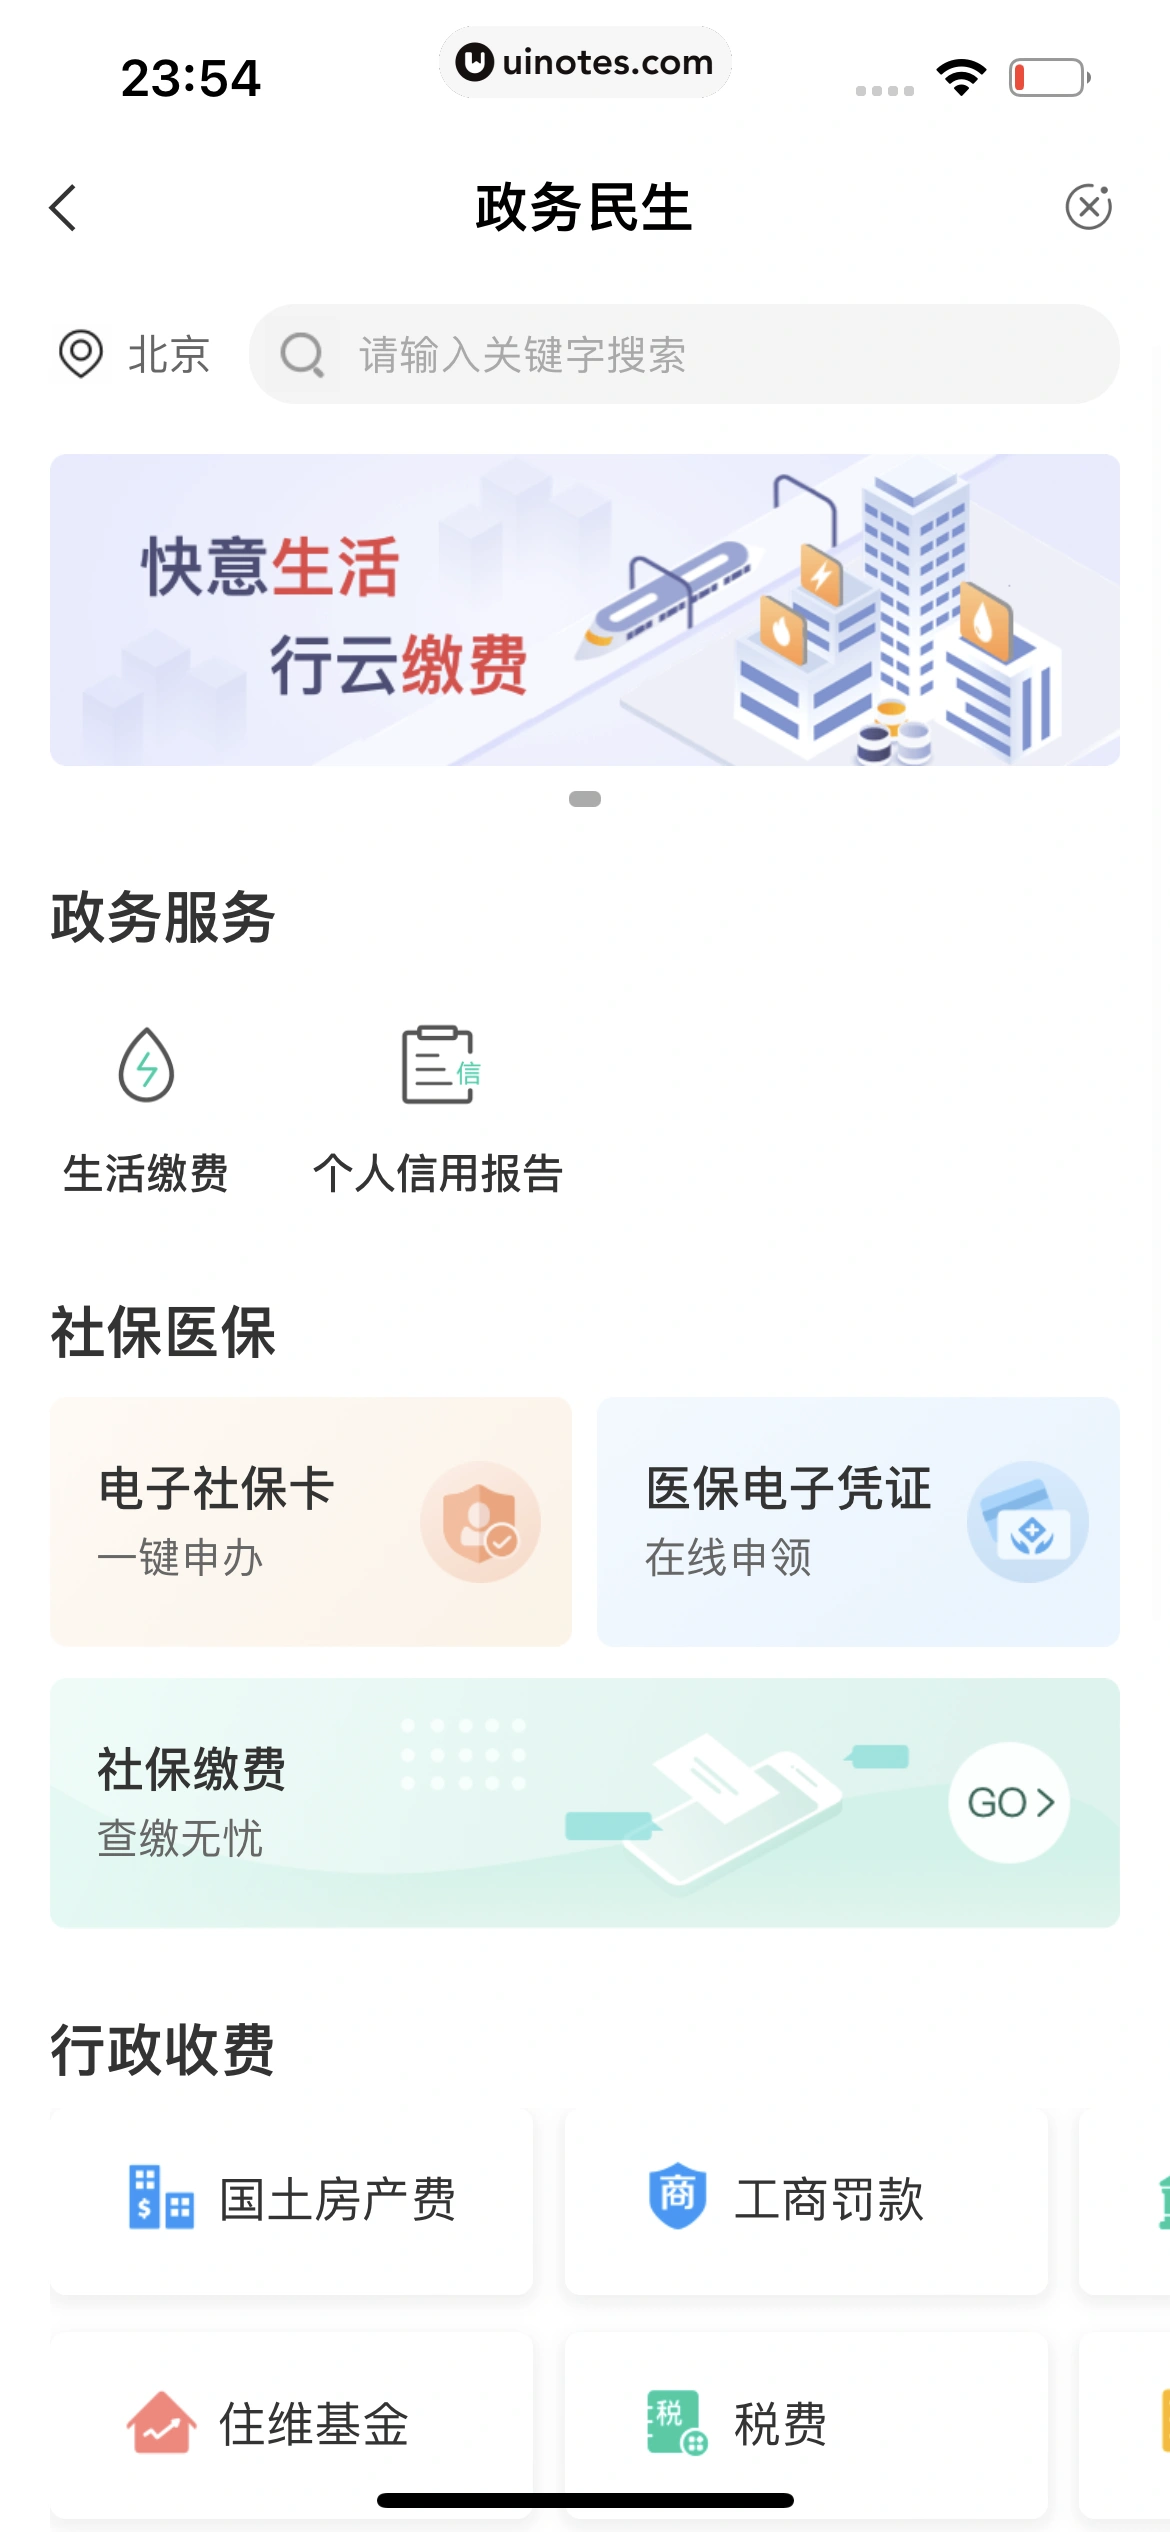 中国农业银行 App 截图 218 - UI Notes